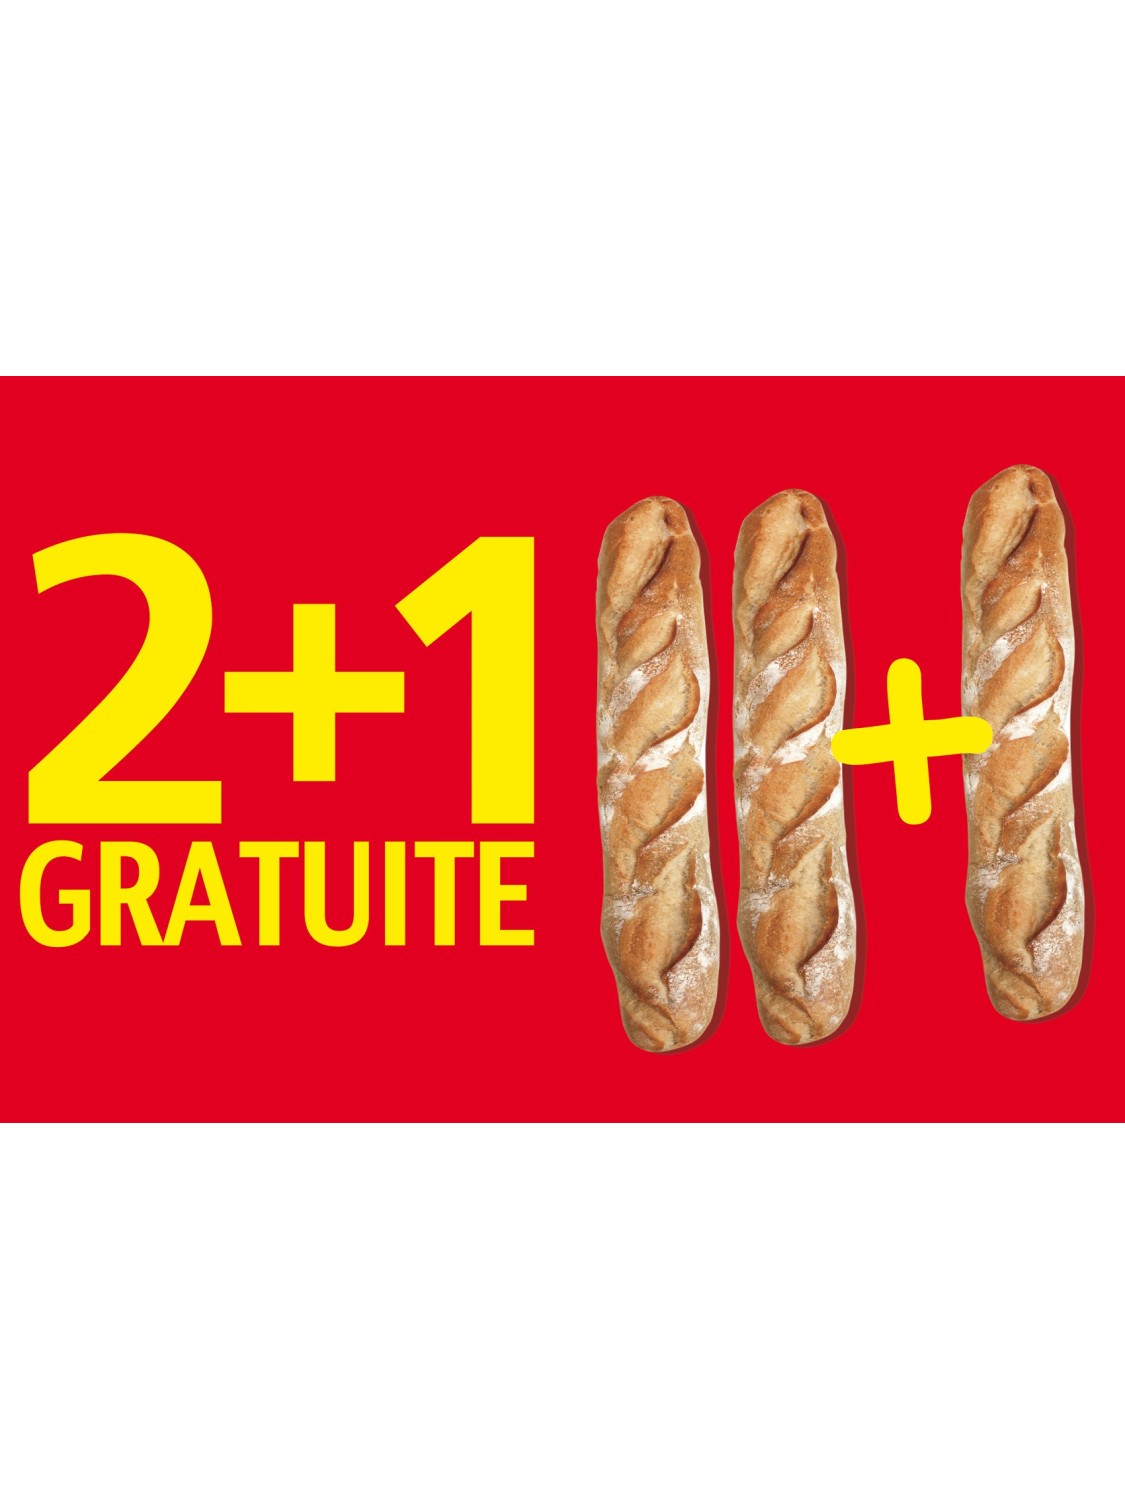 Affiche Boulangerie "2+1 gratuite"